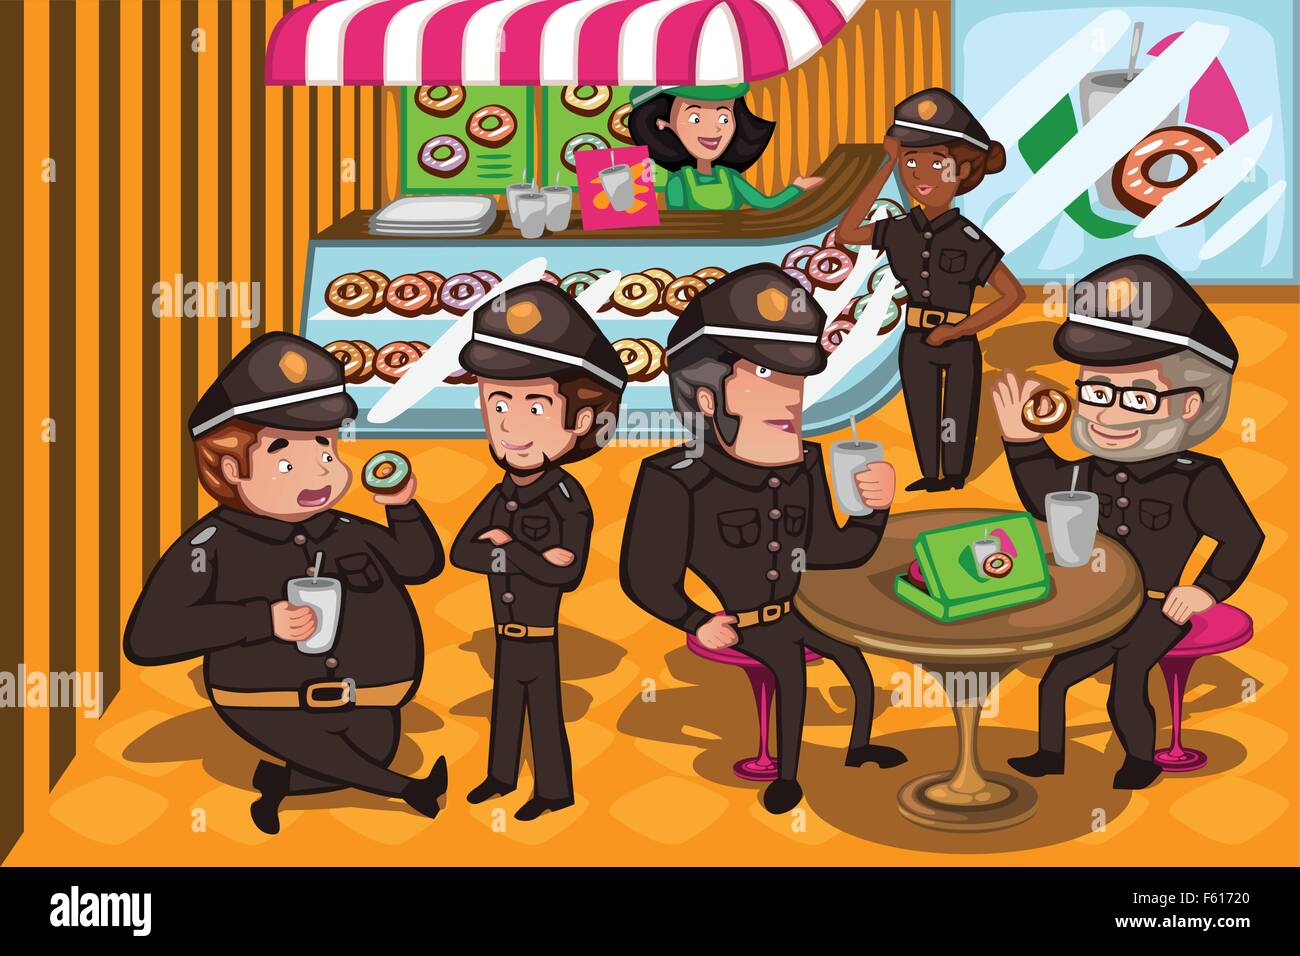 Un vecteur illustration d'agents de police dans un magasin de donuts Illustration de Vecteur